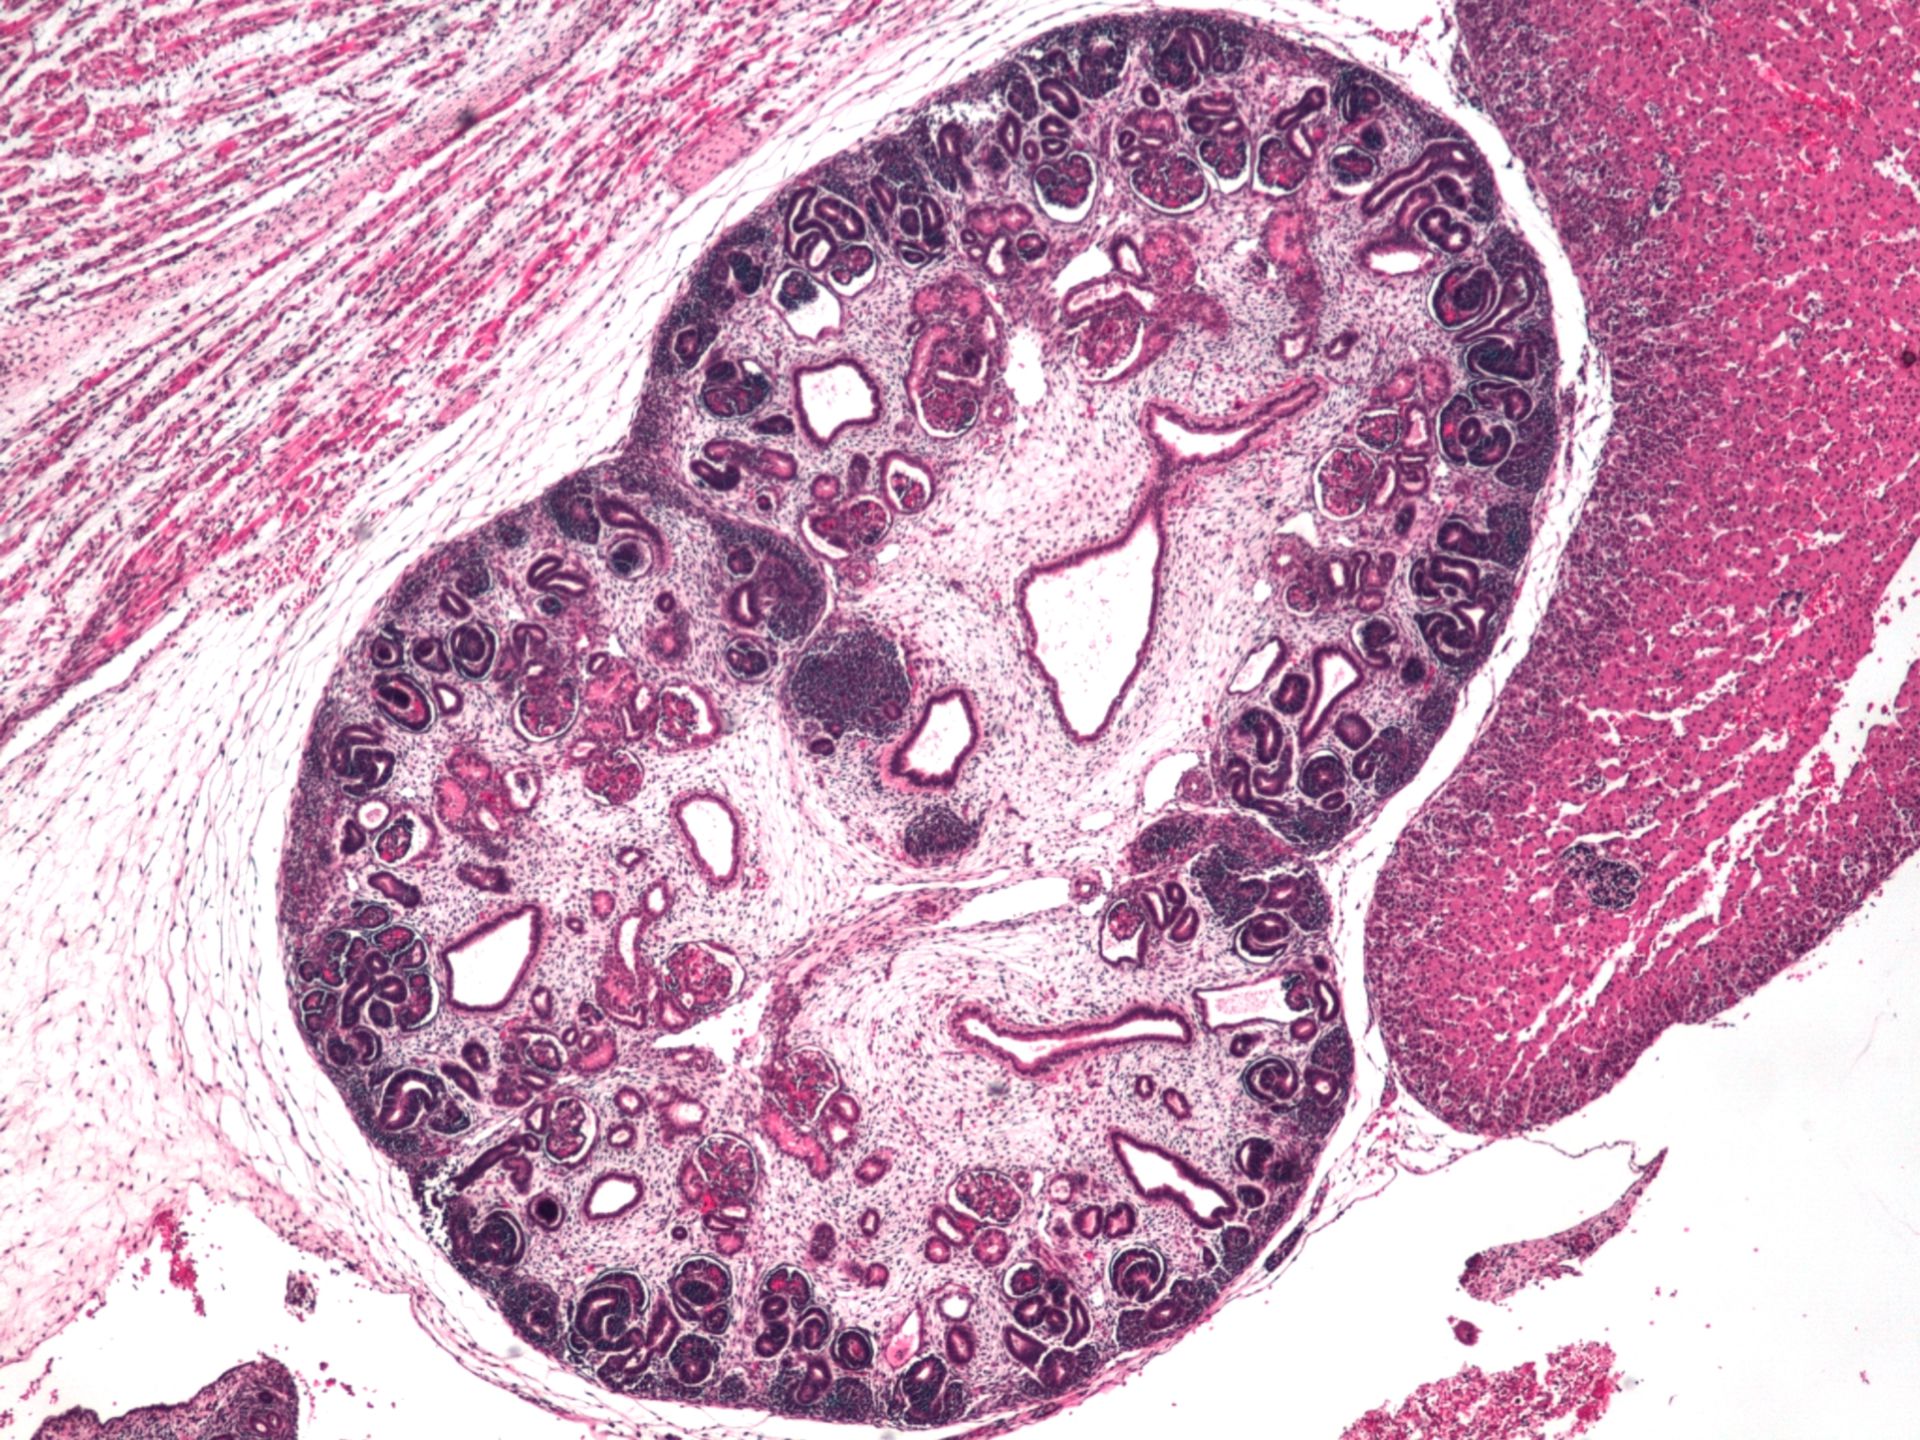 Niere eines menschlichen Embryos (Histologie)